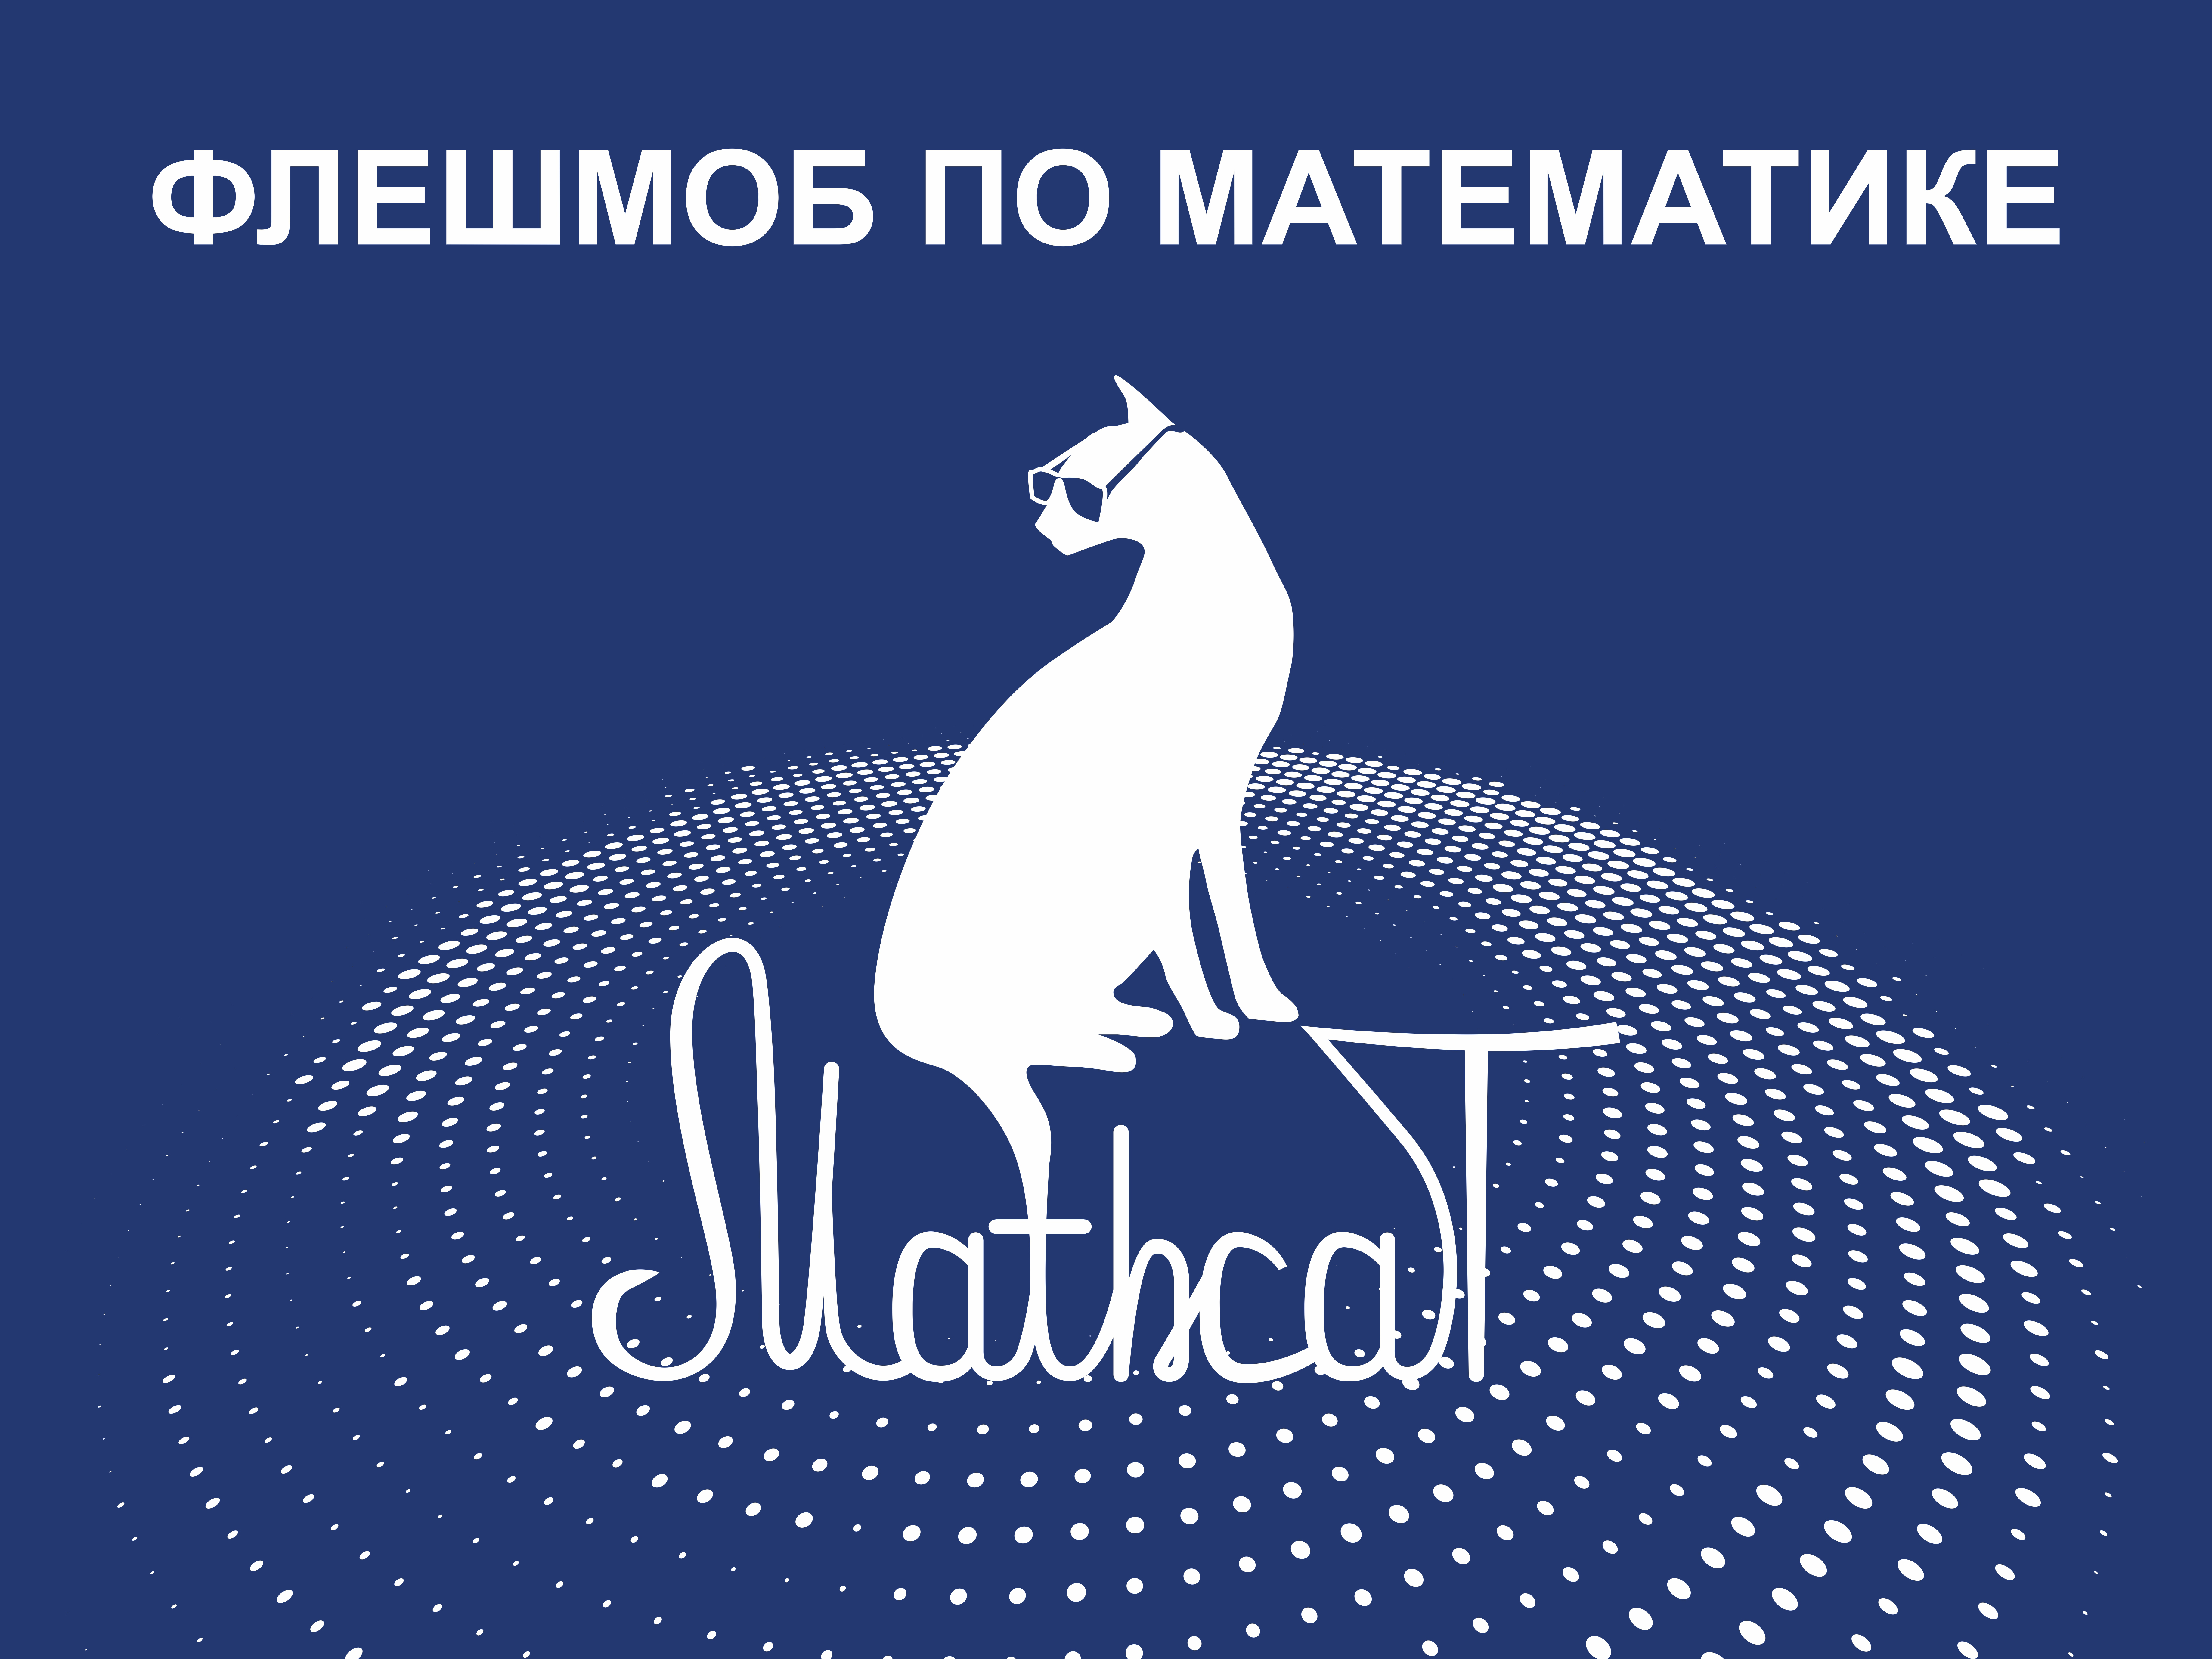 Математический флешмоб MathCat.